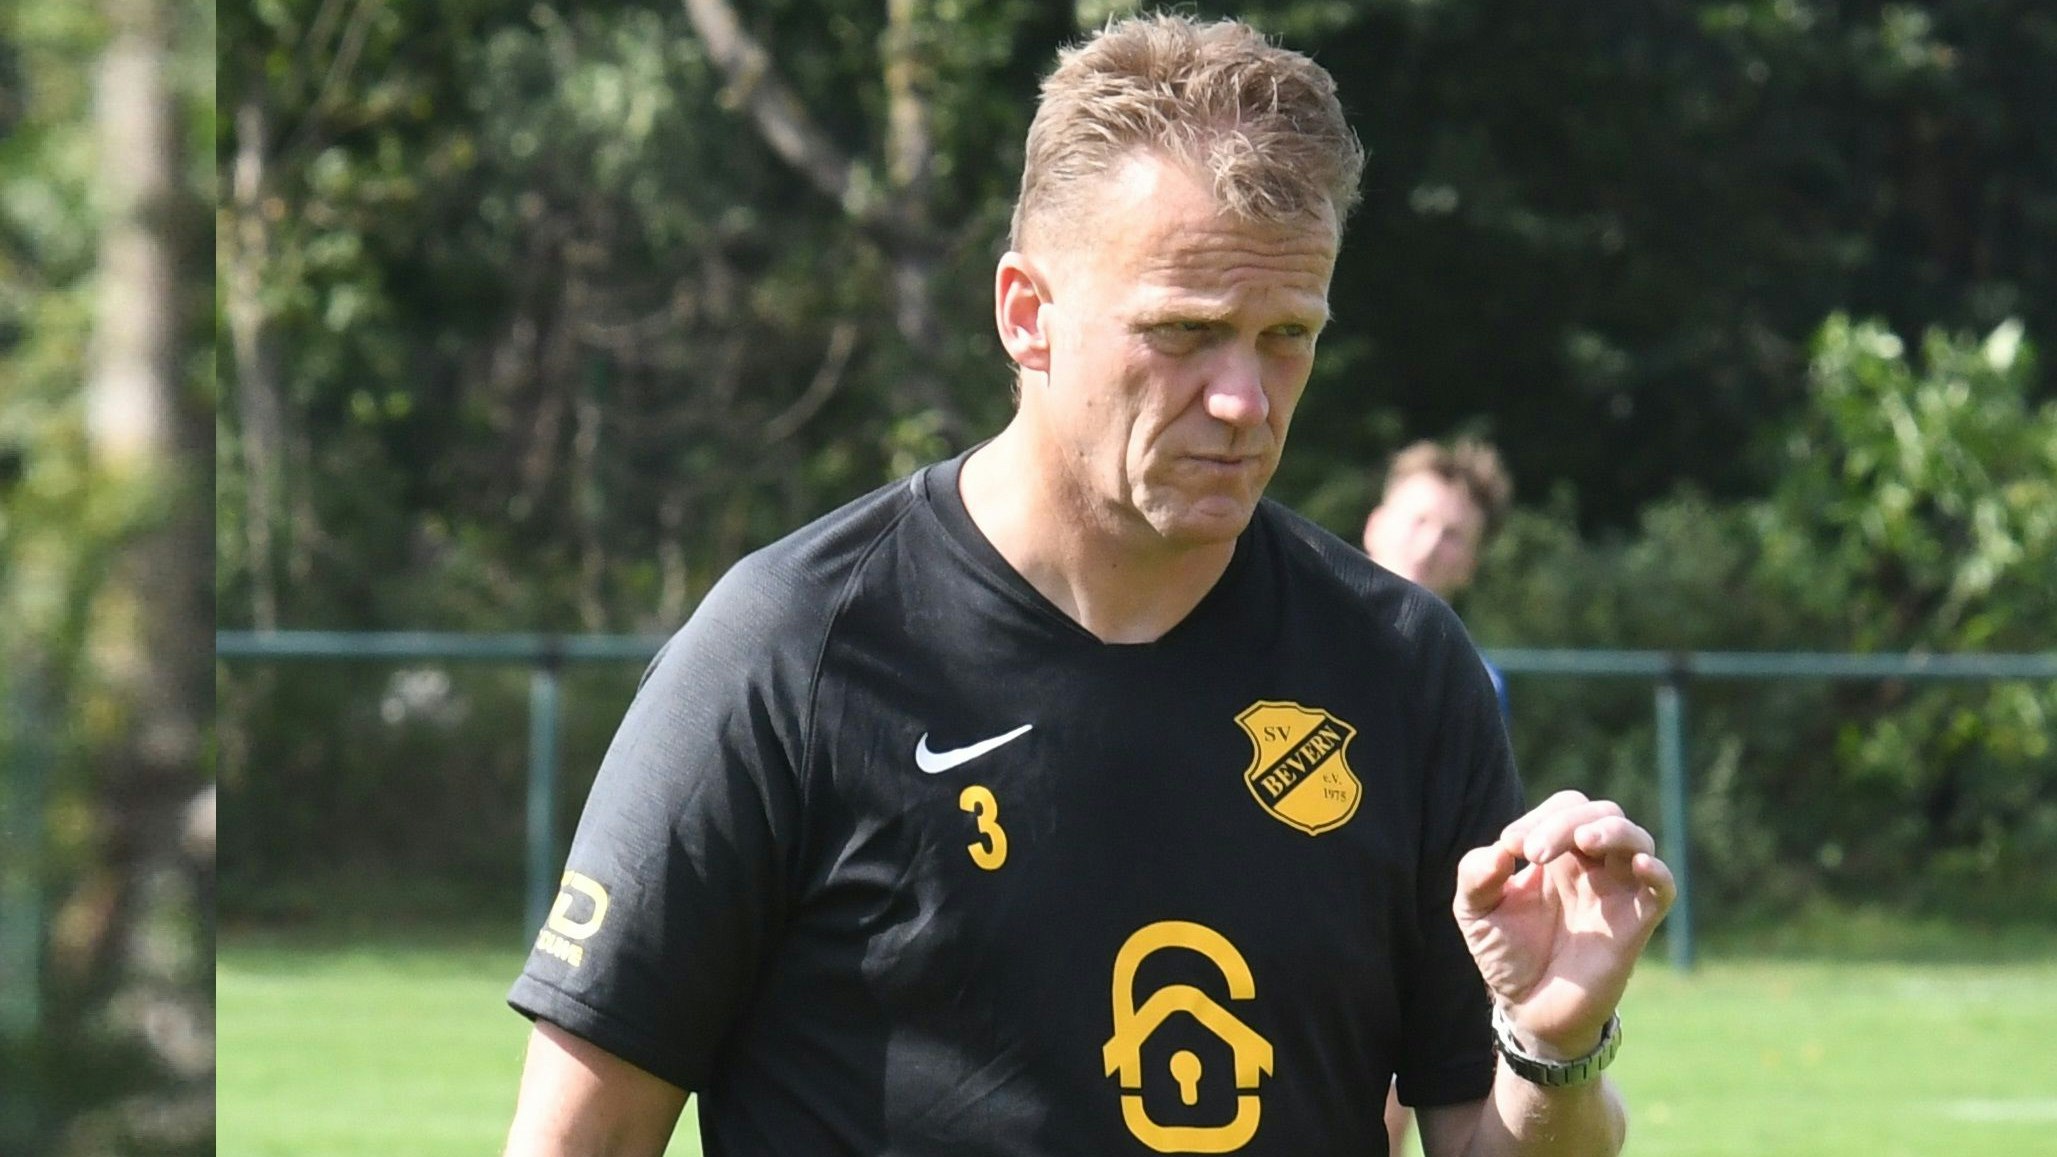 Vom Trainer zum sportlichen Leiter: Olaf Blancke wechselt vom Landesligisten Bevern zum Regionalligisten Jeddeloh. Foto: Wulfers